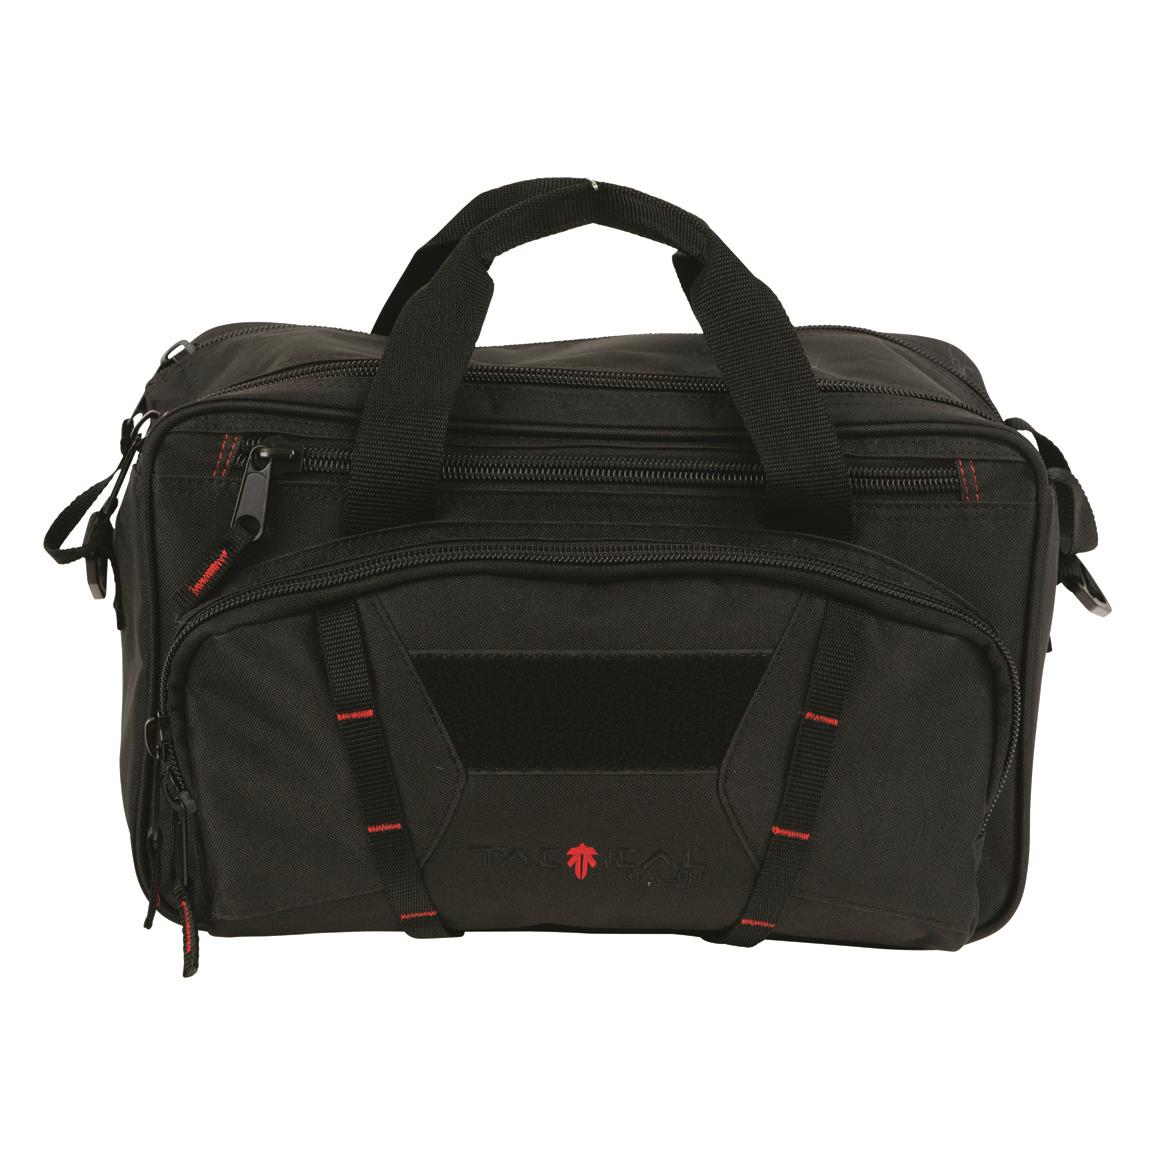 ALLEN Tactical Sporter Range Bag - 712824, Range Bags at Sportsman's Guide